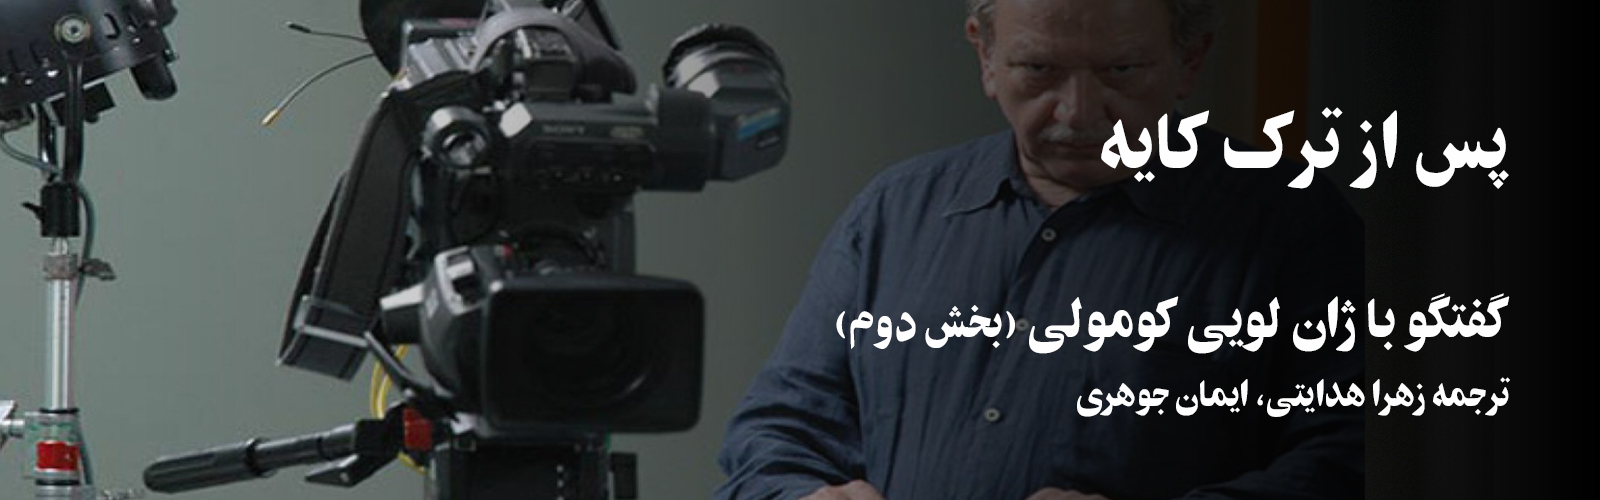 فیلم پن: پس از ترک کایه؛ گفتگوی دنیل فرفکس با ژان لویی کومولی- بخش دوم